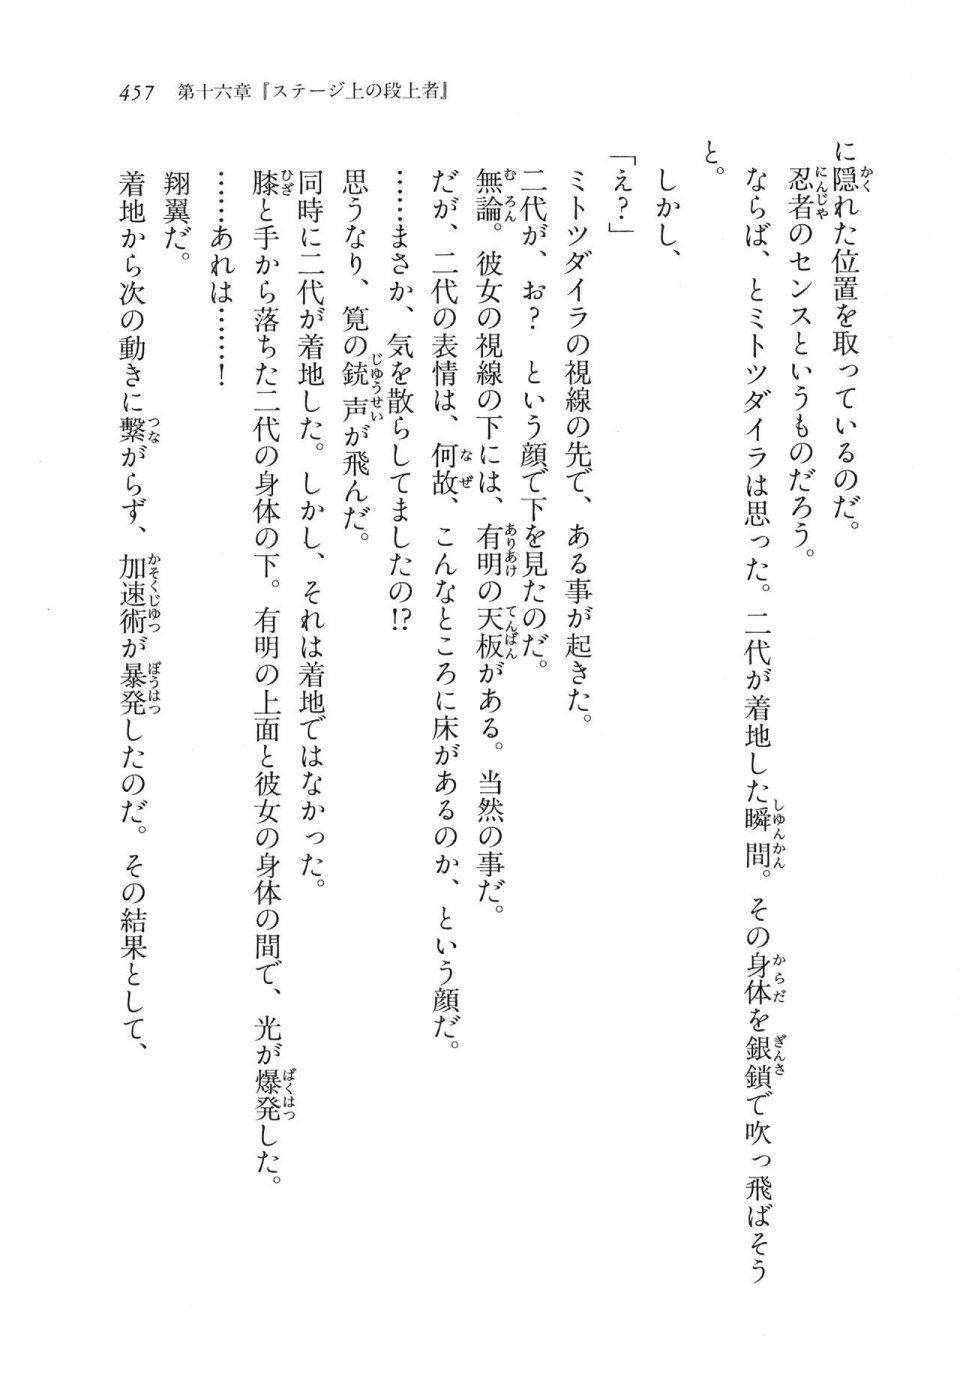 Kyoukai Senjou no Horizon LN Vol 11(5A) - Photo #457